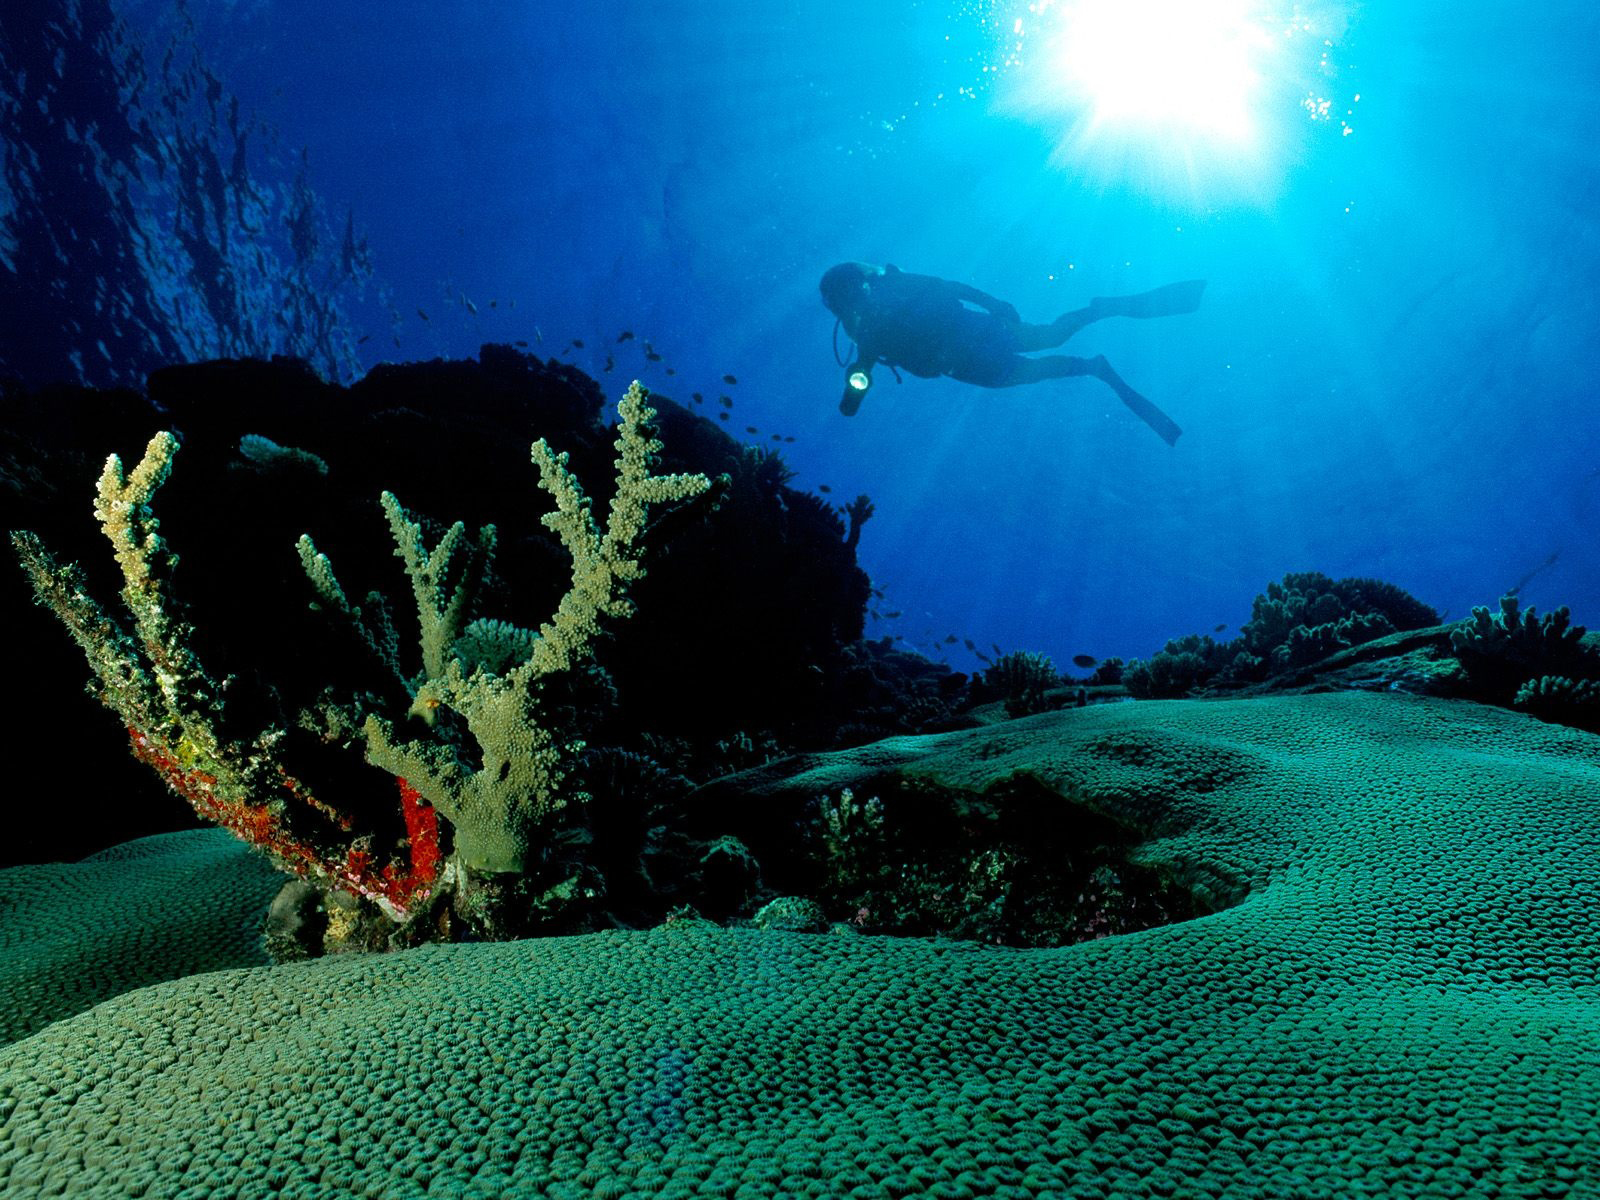 fond d'écran hd sous l'eau,sous marin,biologie marine,récif,récif de corail,corail